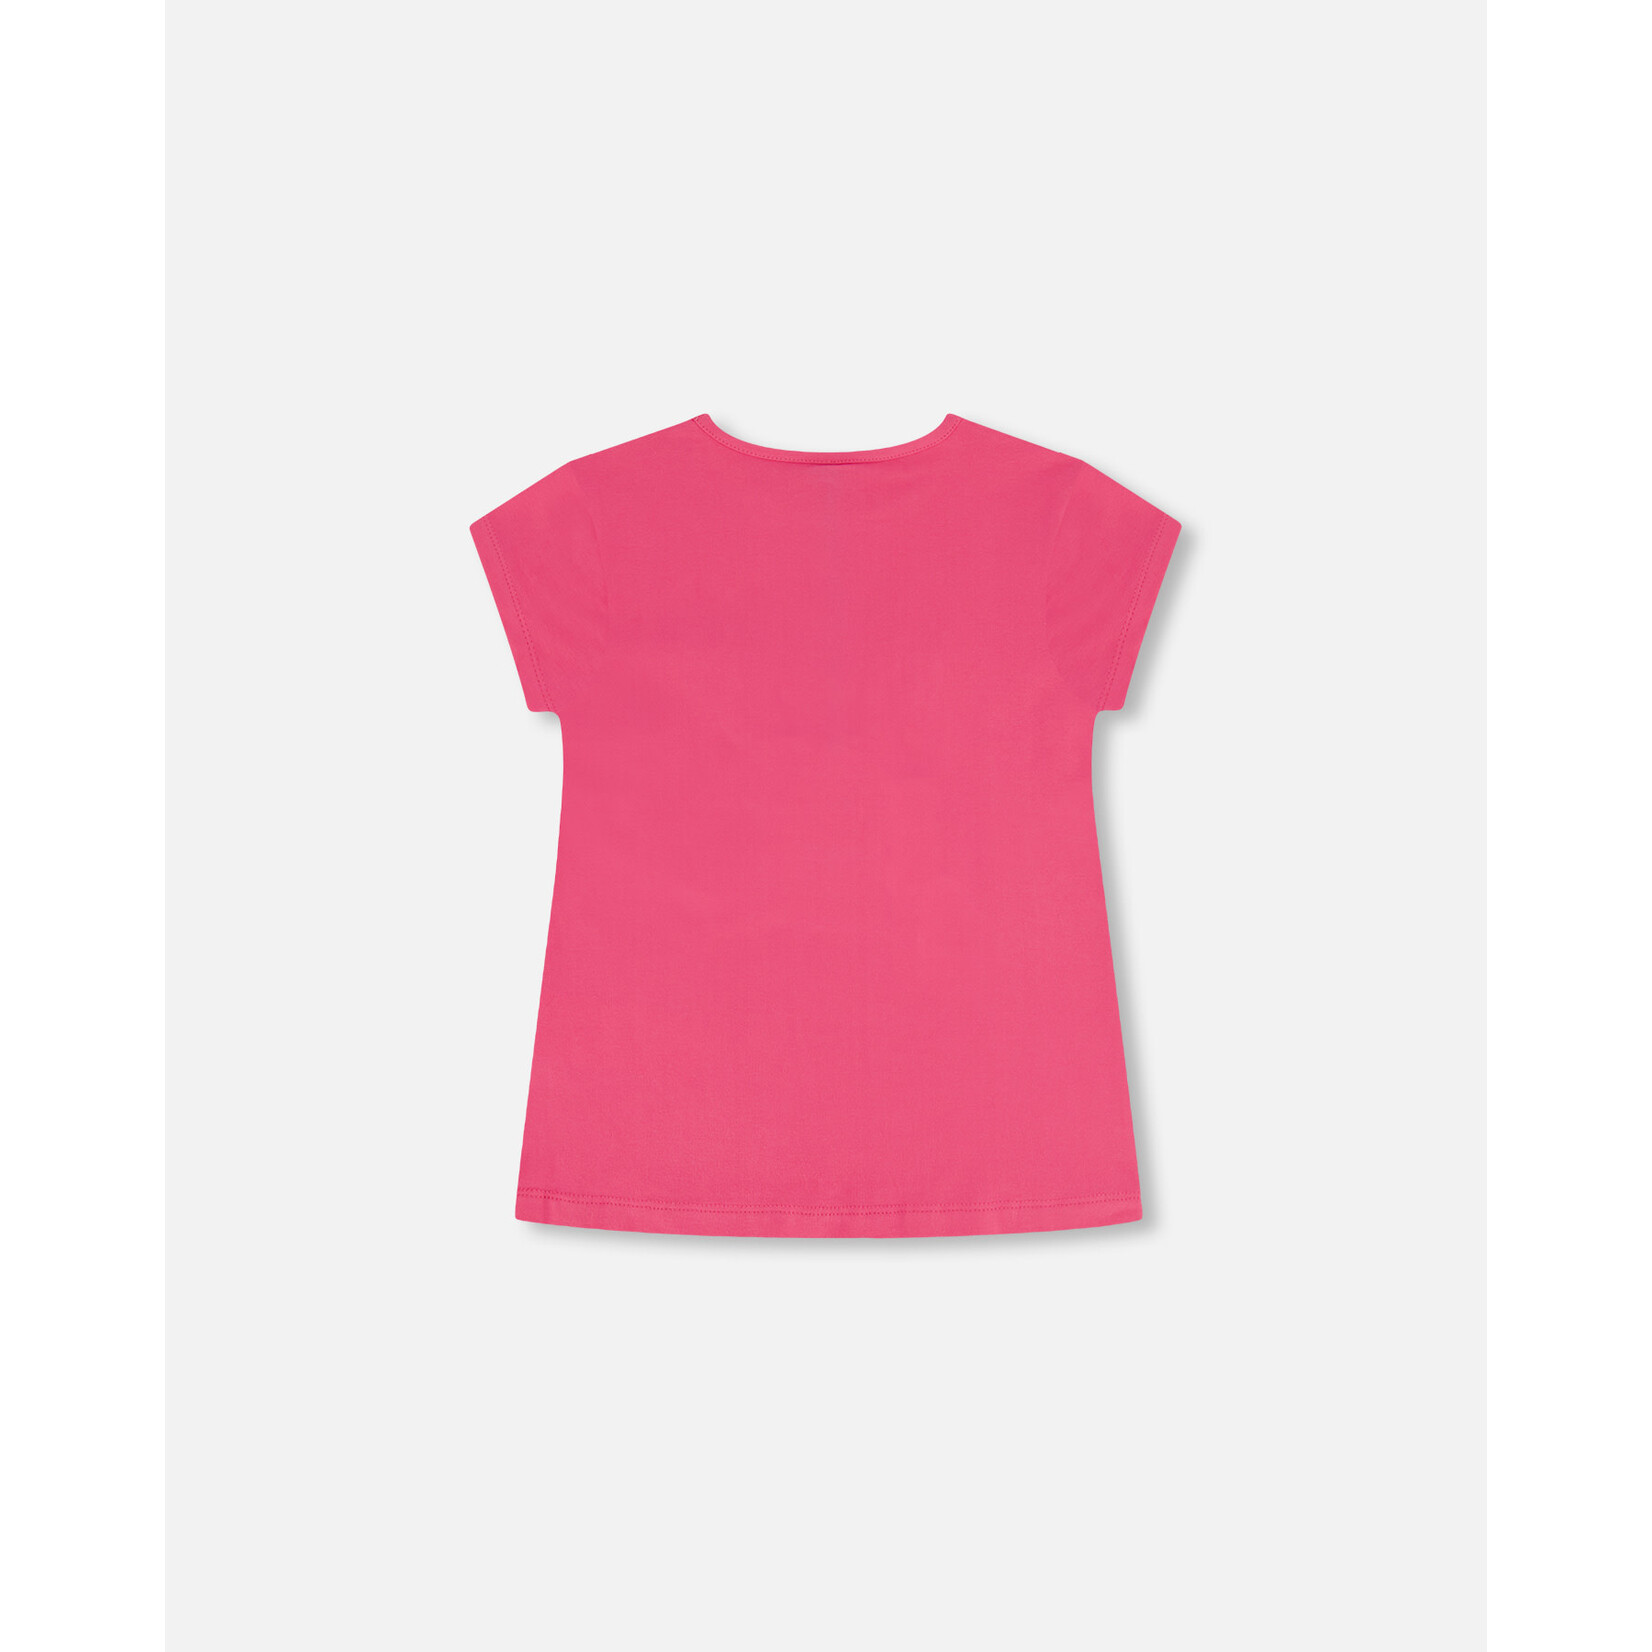 DEUX PAR DEUX Organic Cotton Top with Print And Applique Shocking Pink